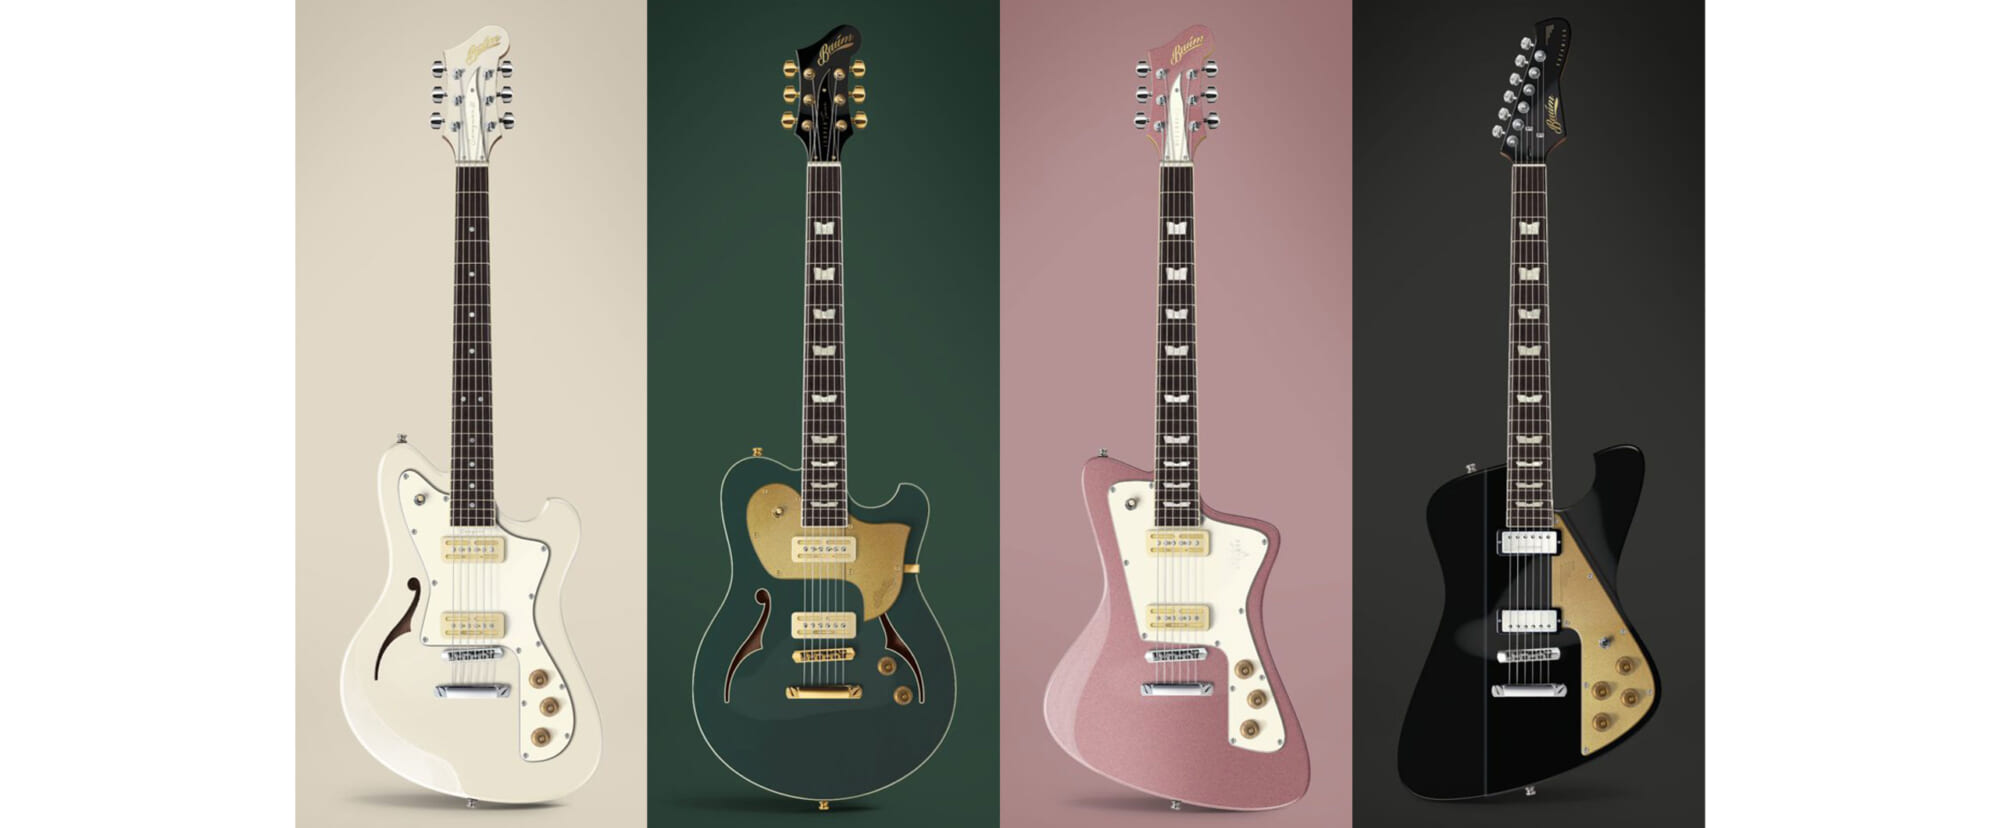 神田商会、デンマーク発のギター・ブランド“バウム・ギターズ”の製品の取り扱いを開始